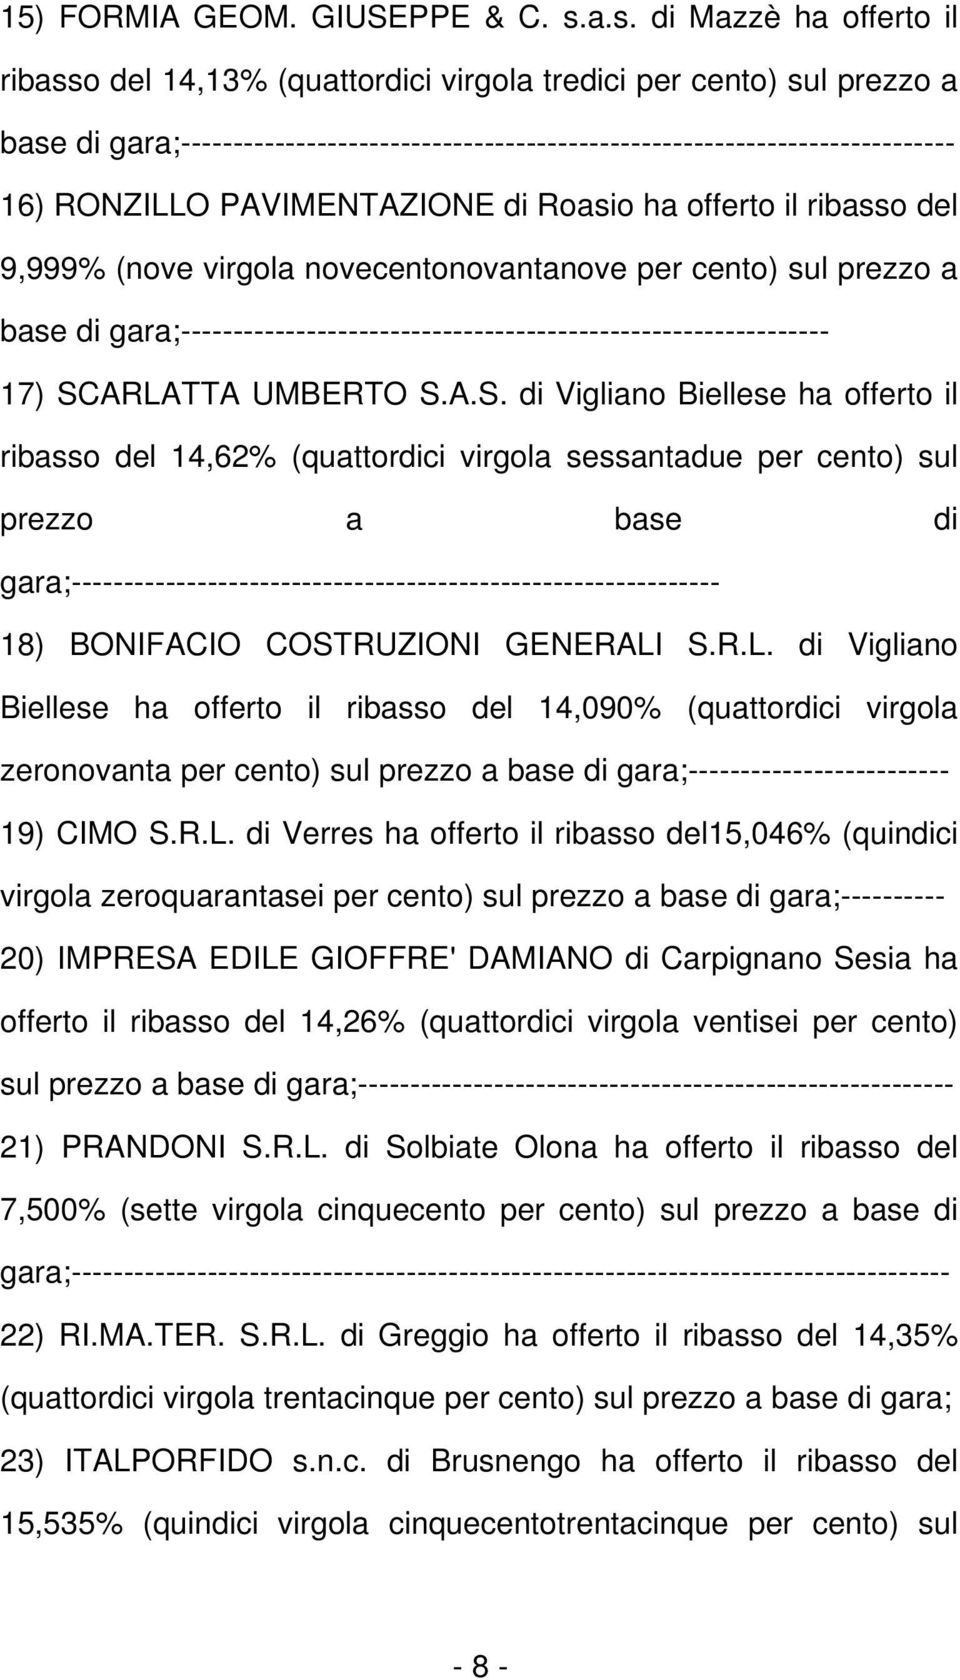 RONZILLO PAVIMENTAZIONE di Roasio ha offerto il ribasso del 9,999% (nove virgola novecentonovantanove per cento) sul prezzo a base di